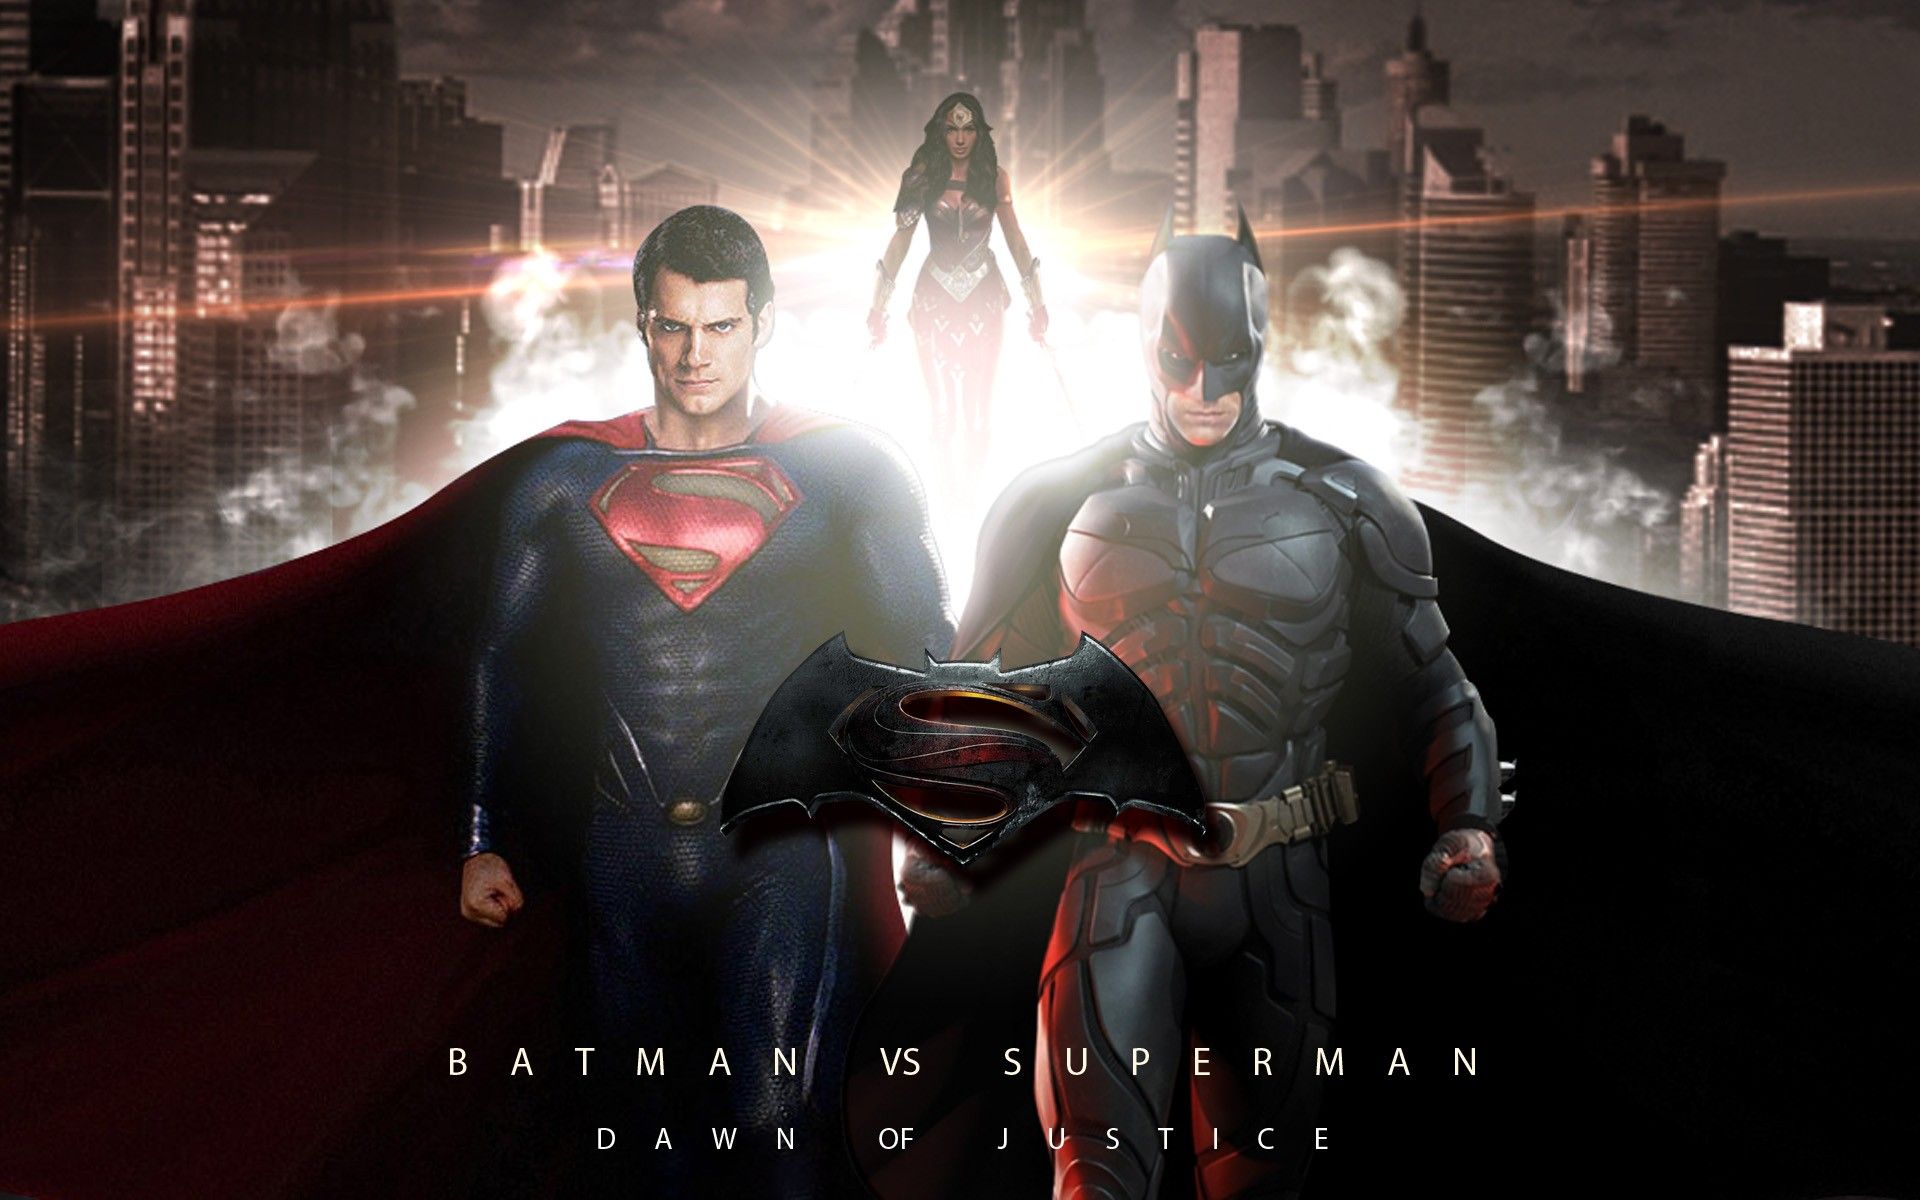 Batman VS Superman Cast Wallpaper, DC Comics, Dawn Of Justice